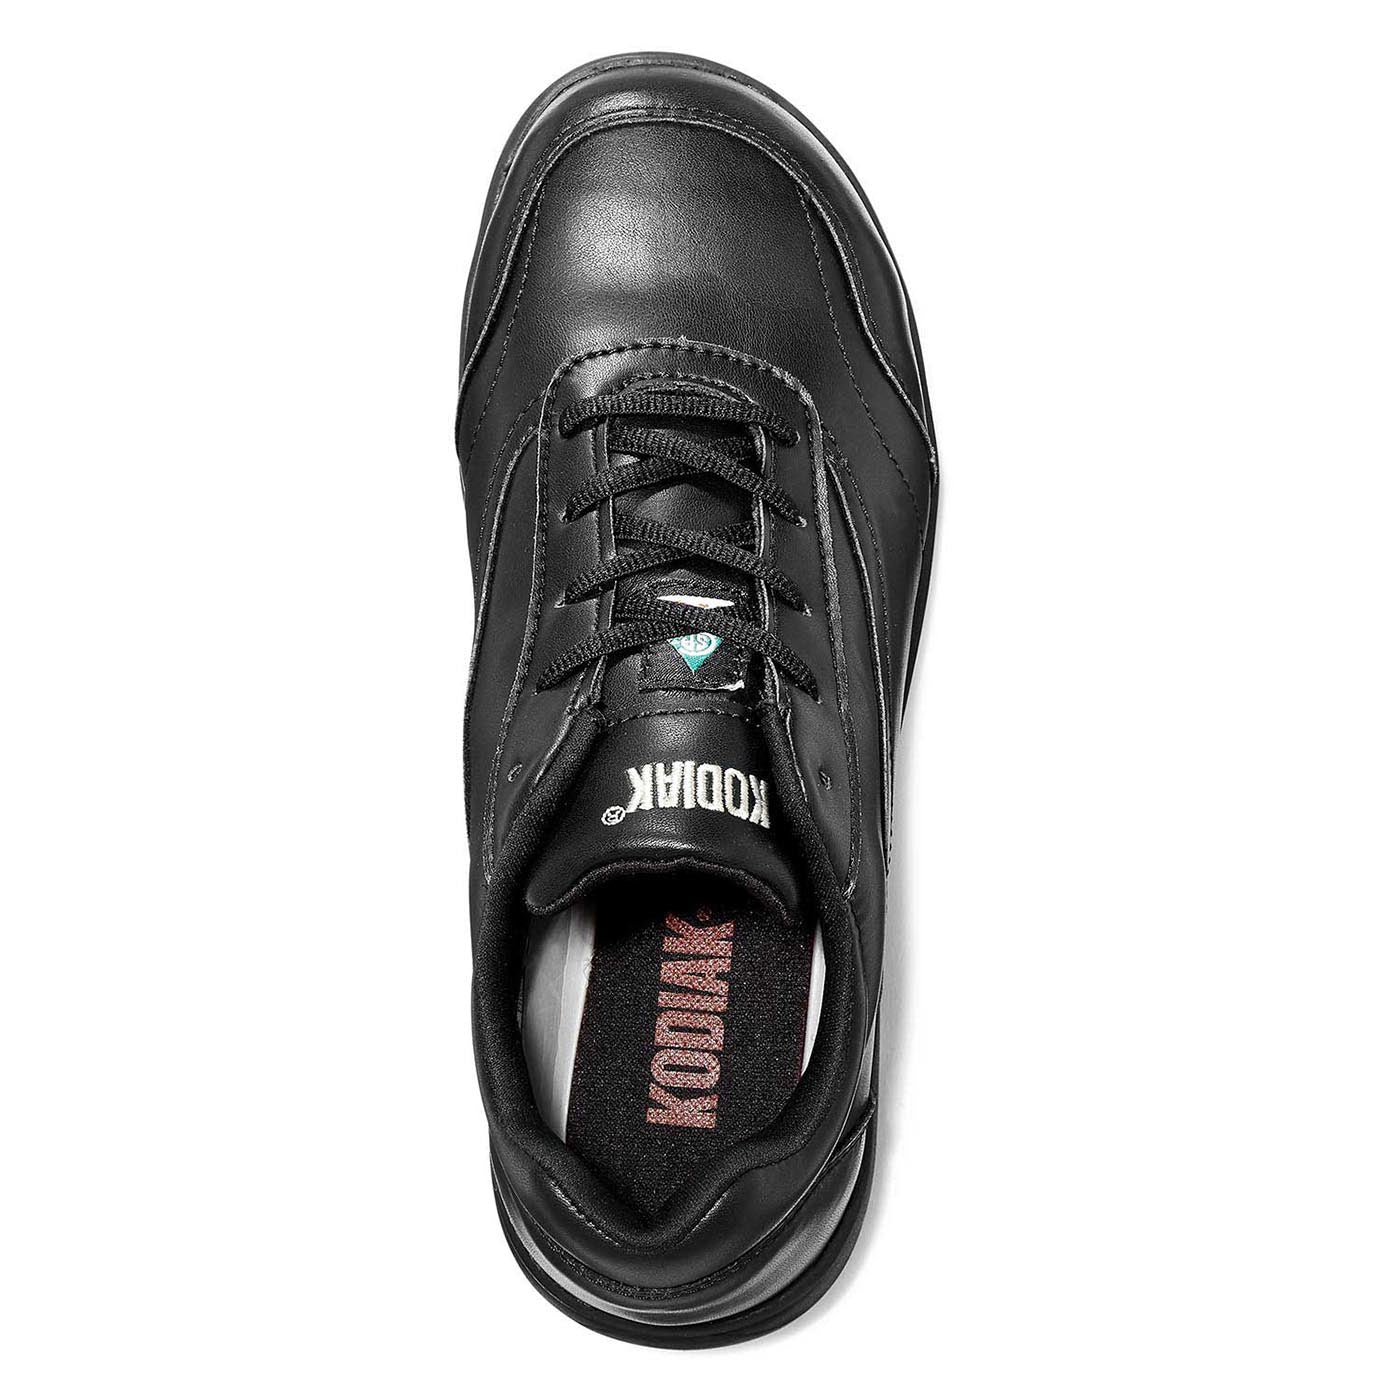 Kodiak Taja Steel Toe Flex Women's Safety Shoes | Black | Sizes 5 - 10 Work Boots - Cleanflow